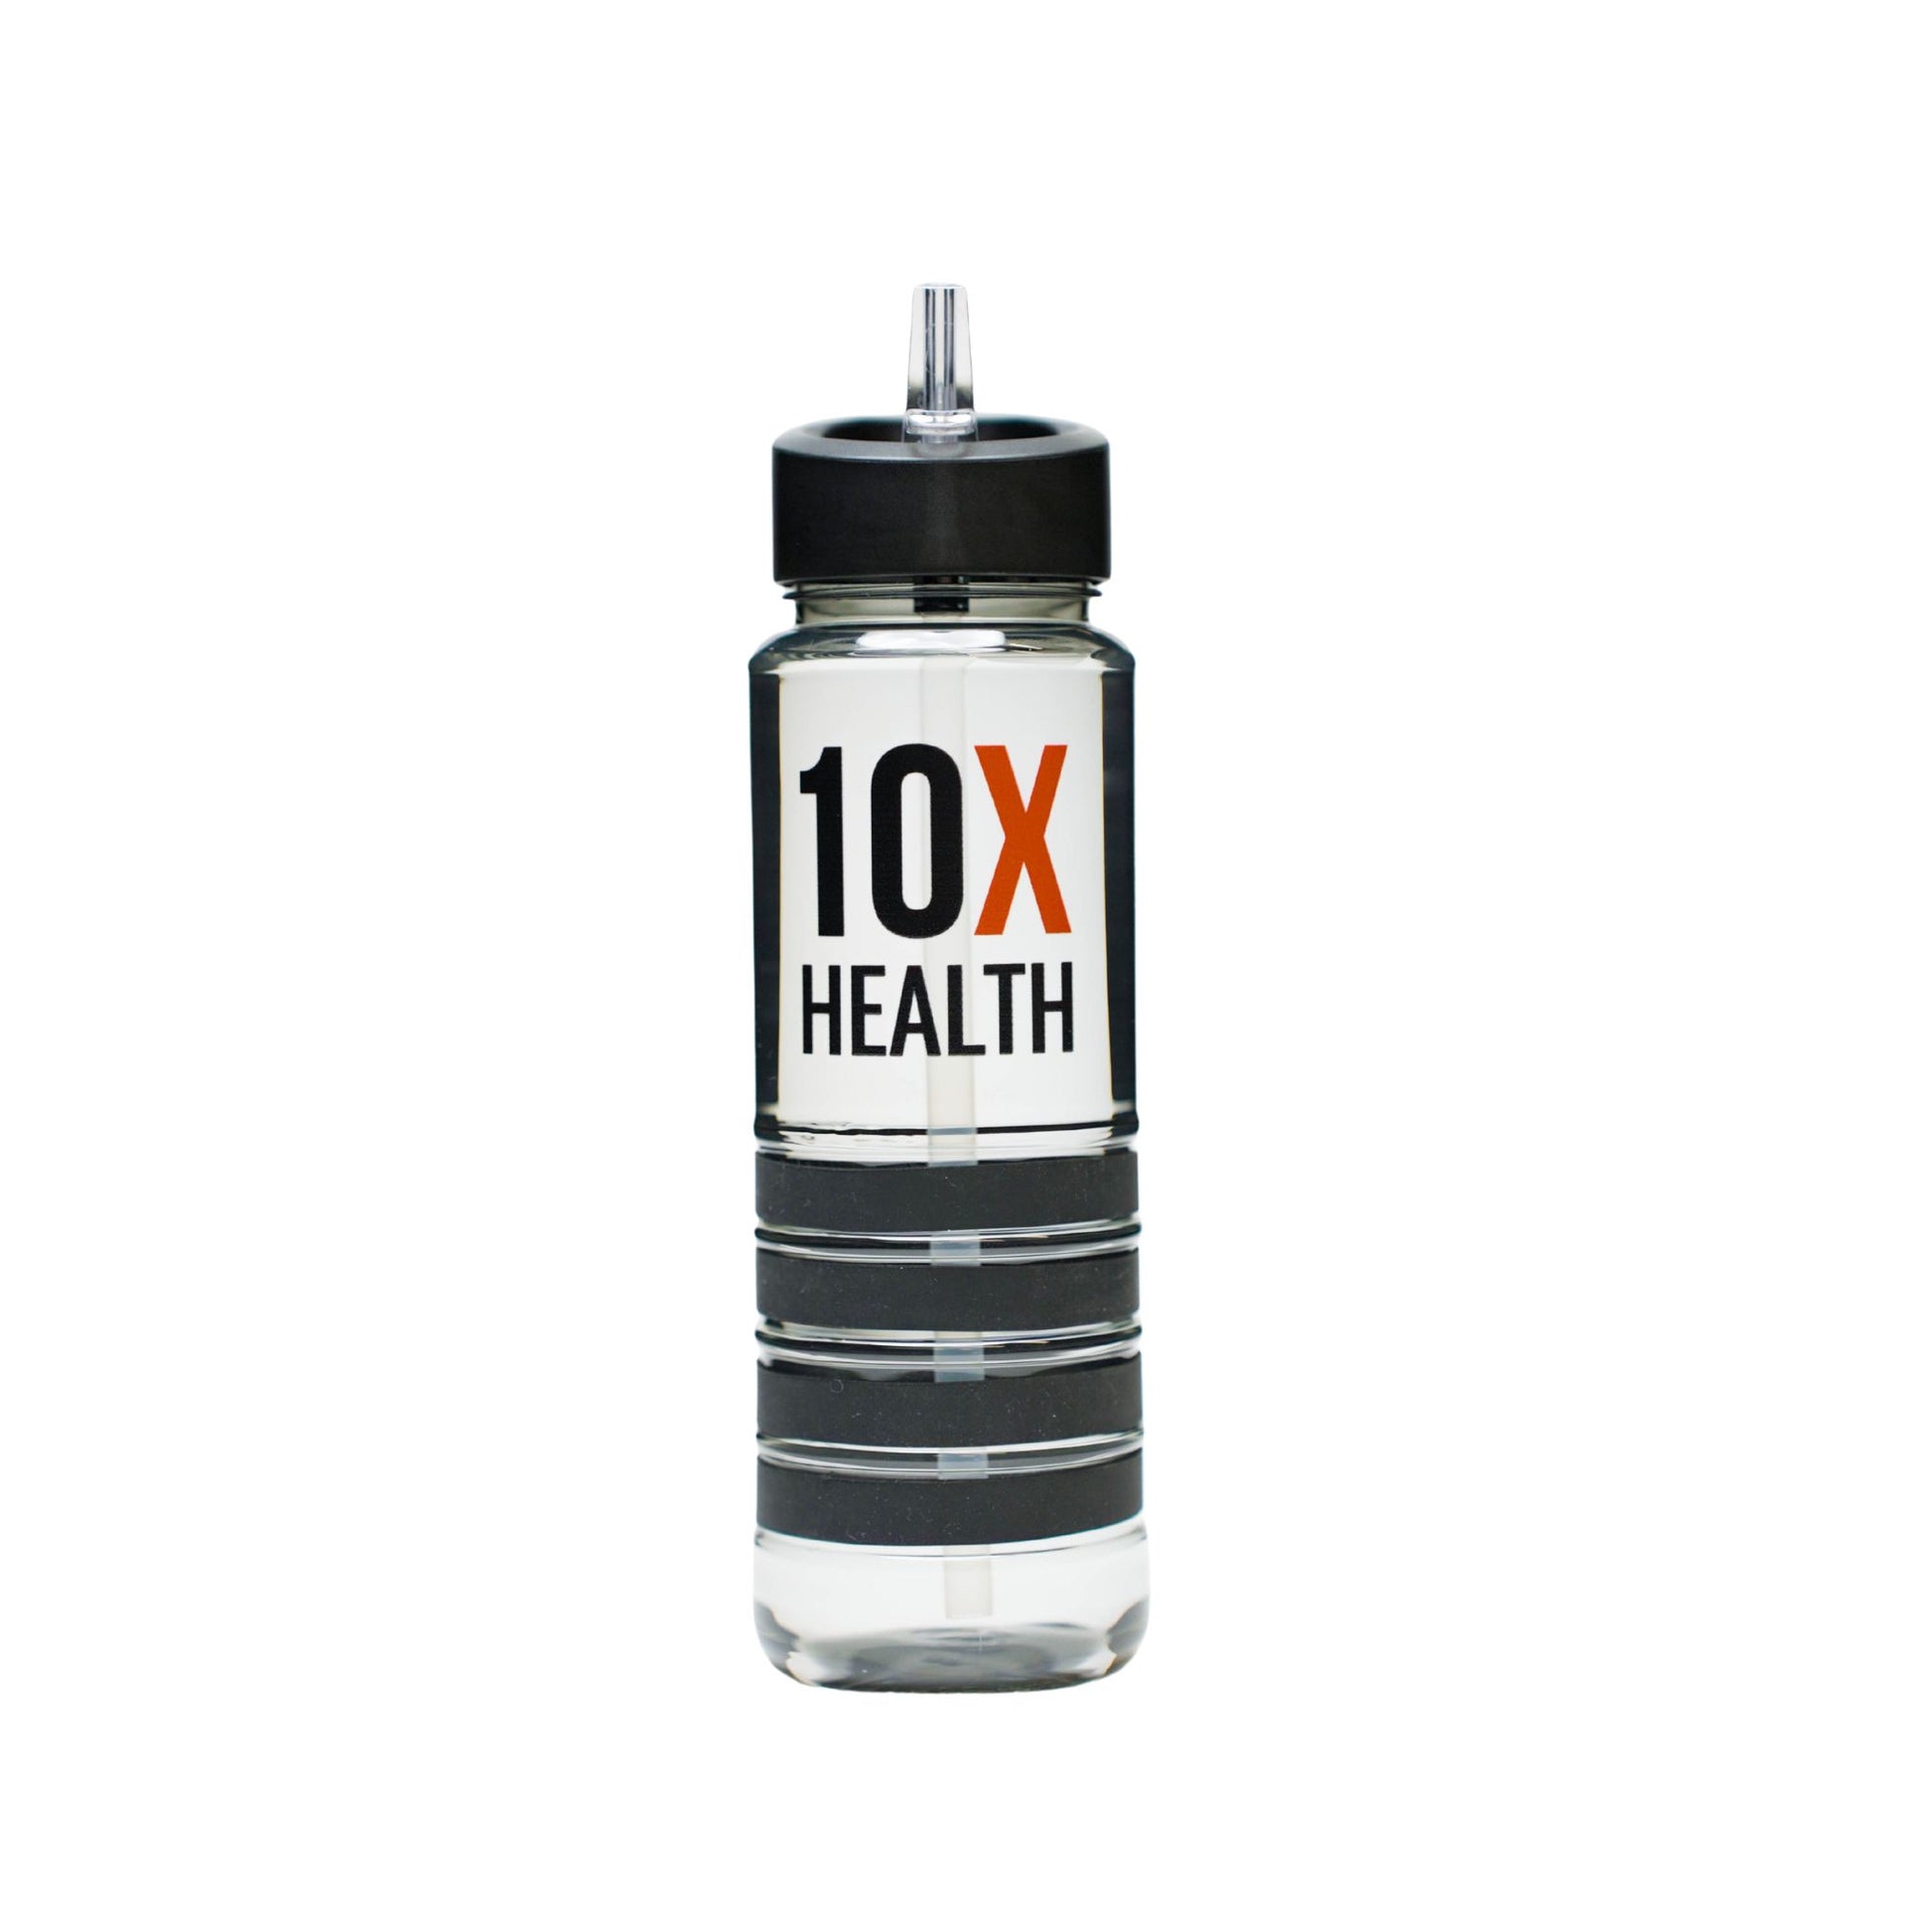 10X Health Water Bottle